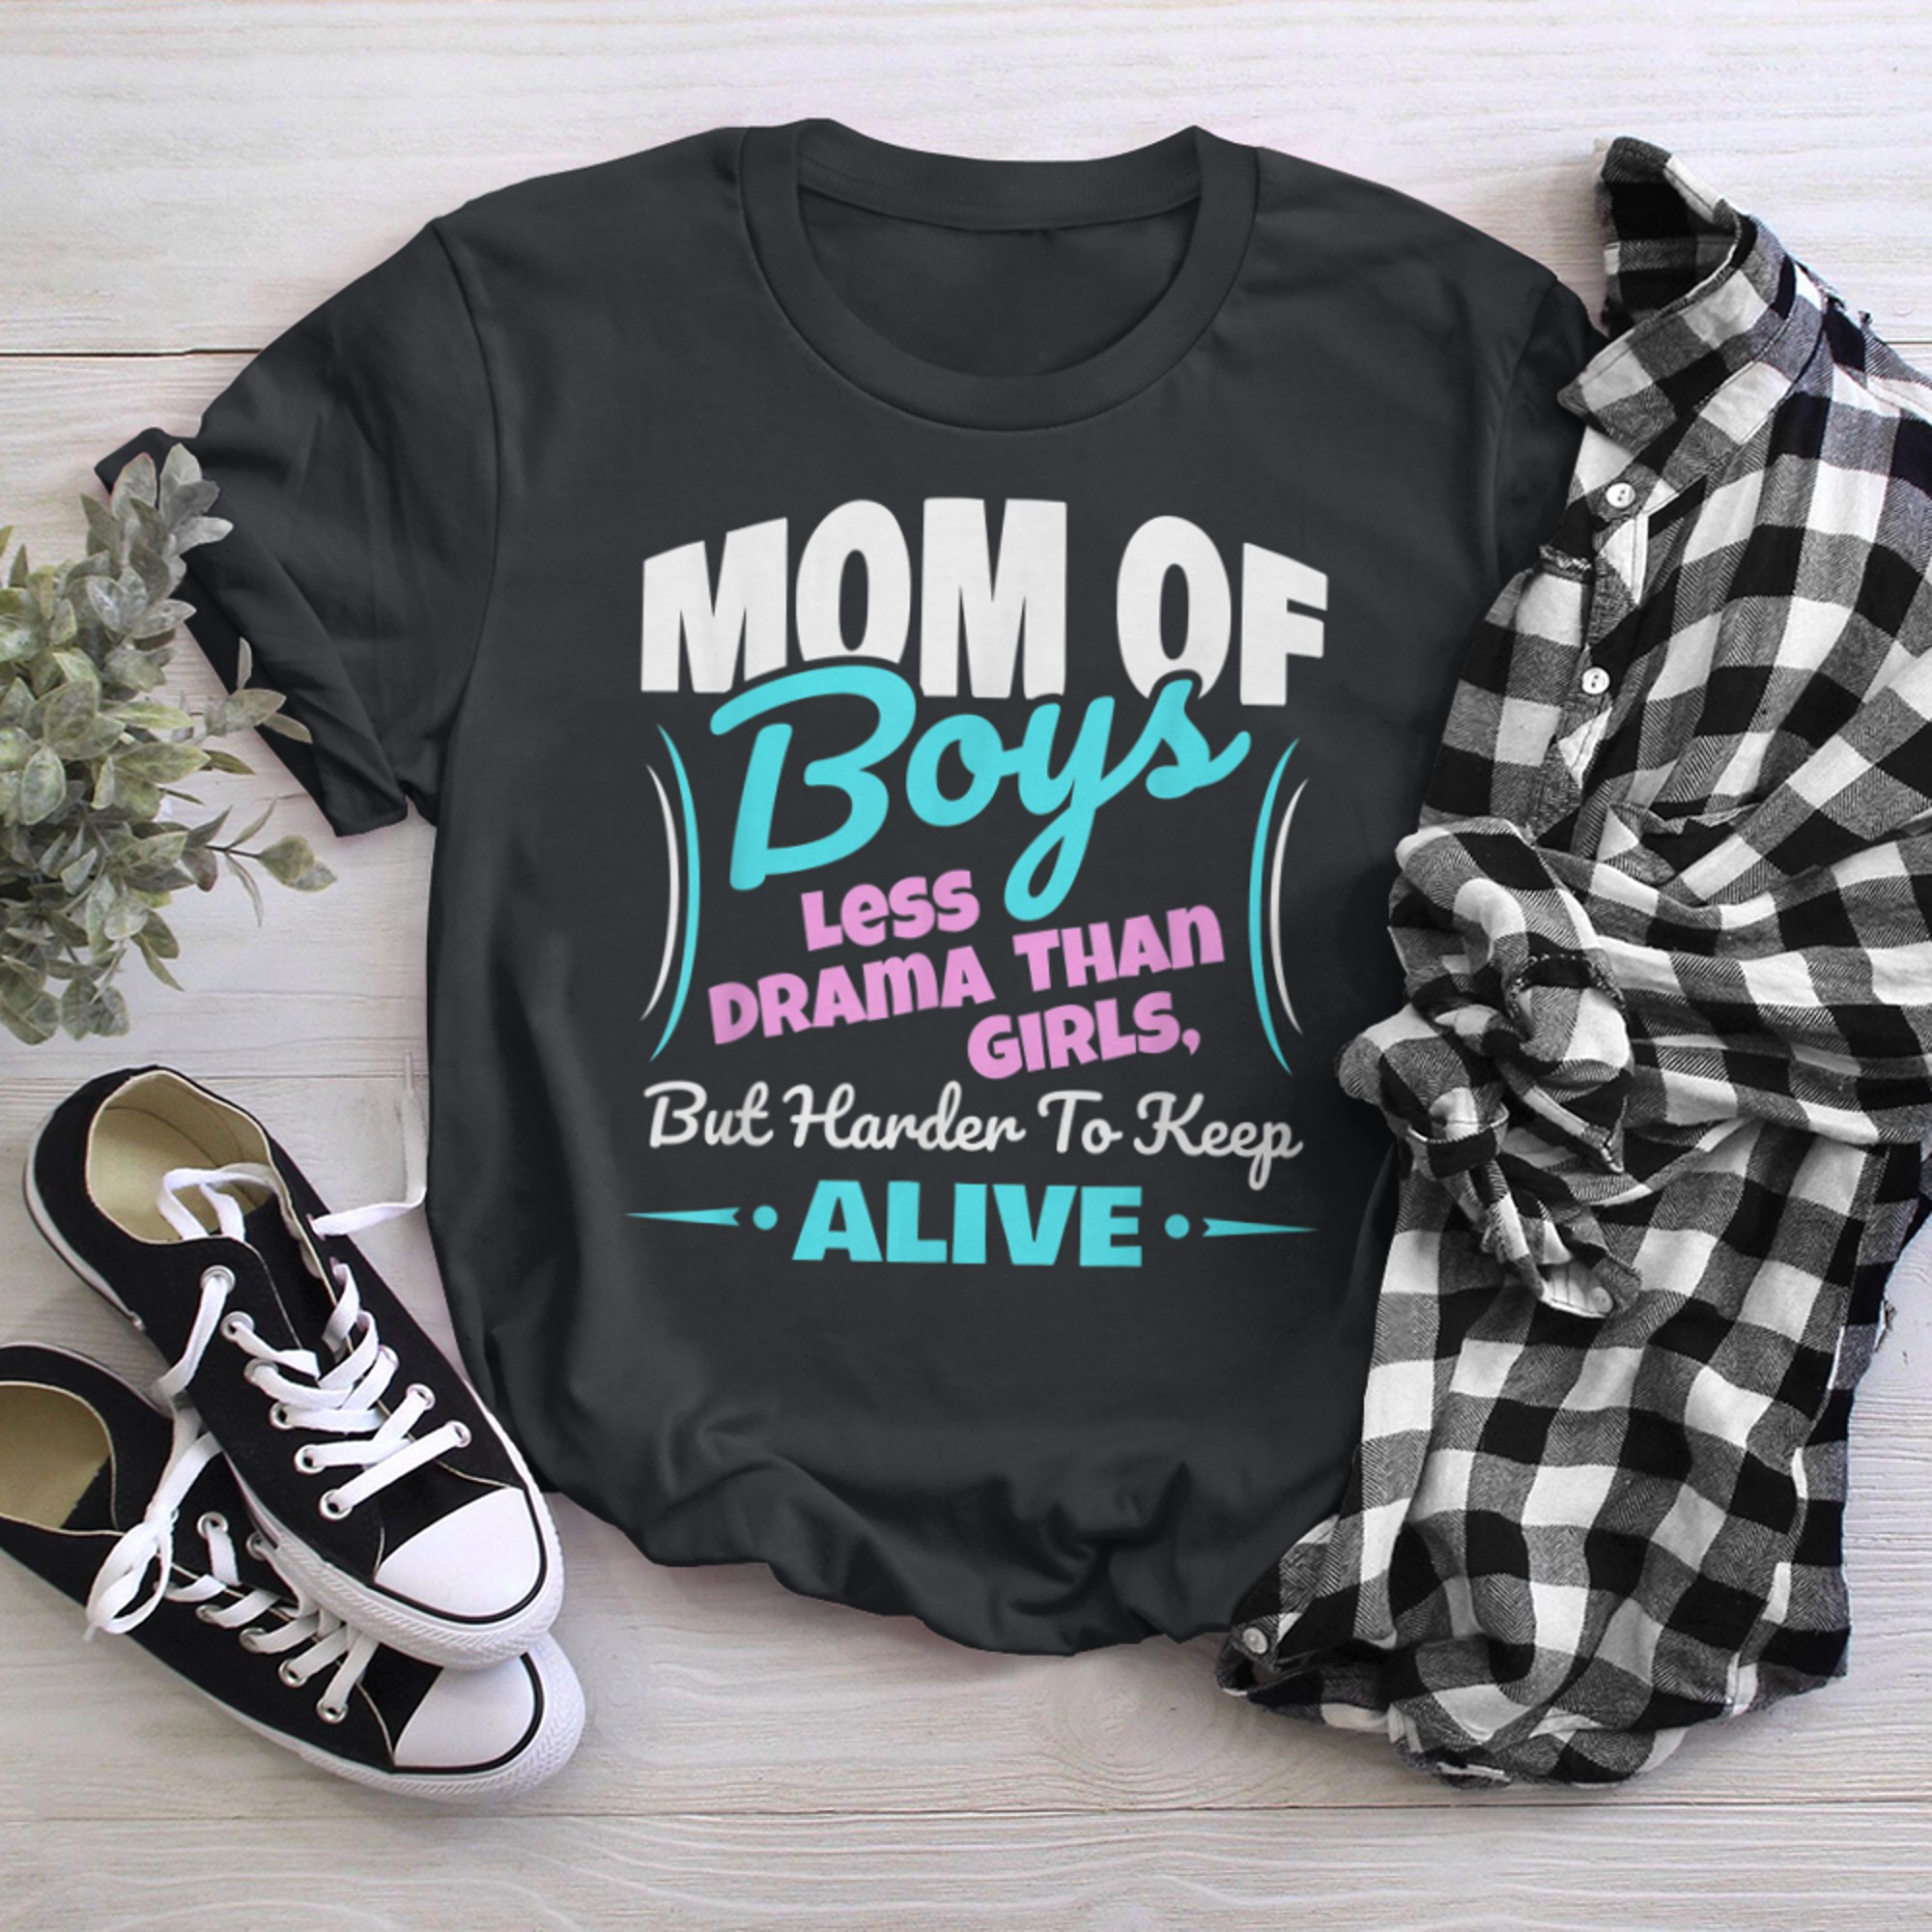 Mom Of Less Drama Than Mom t-shirt black